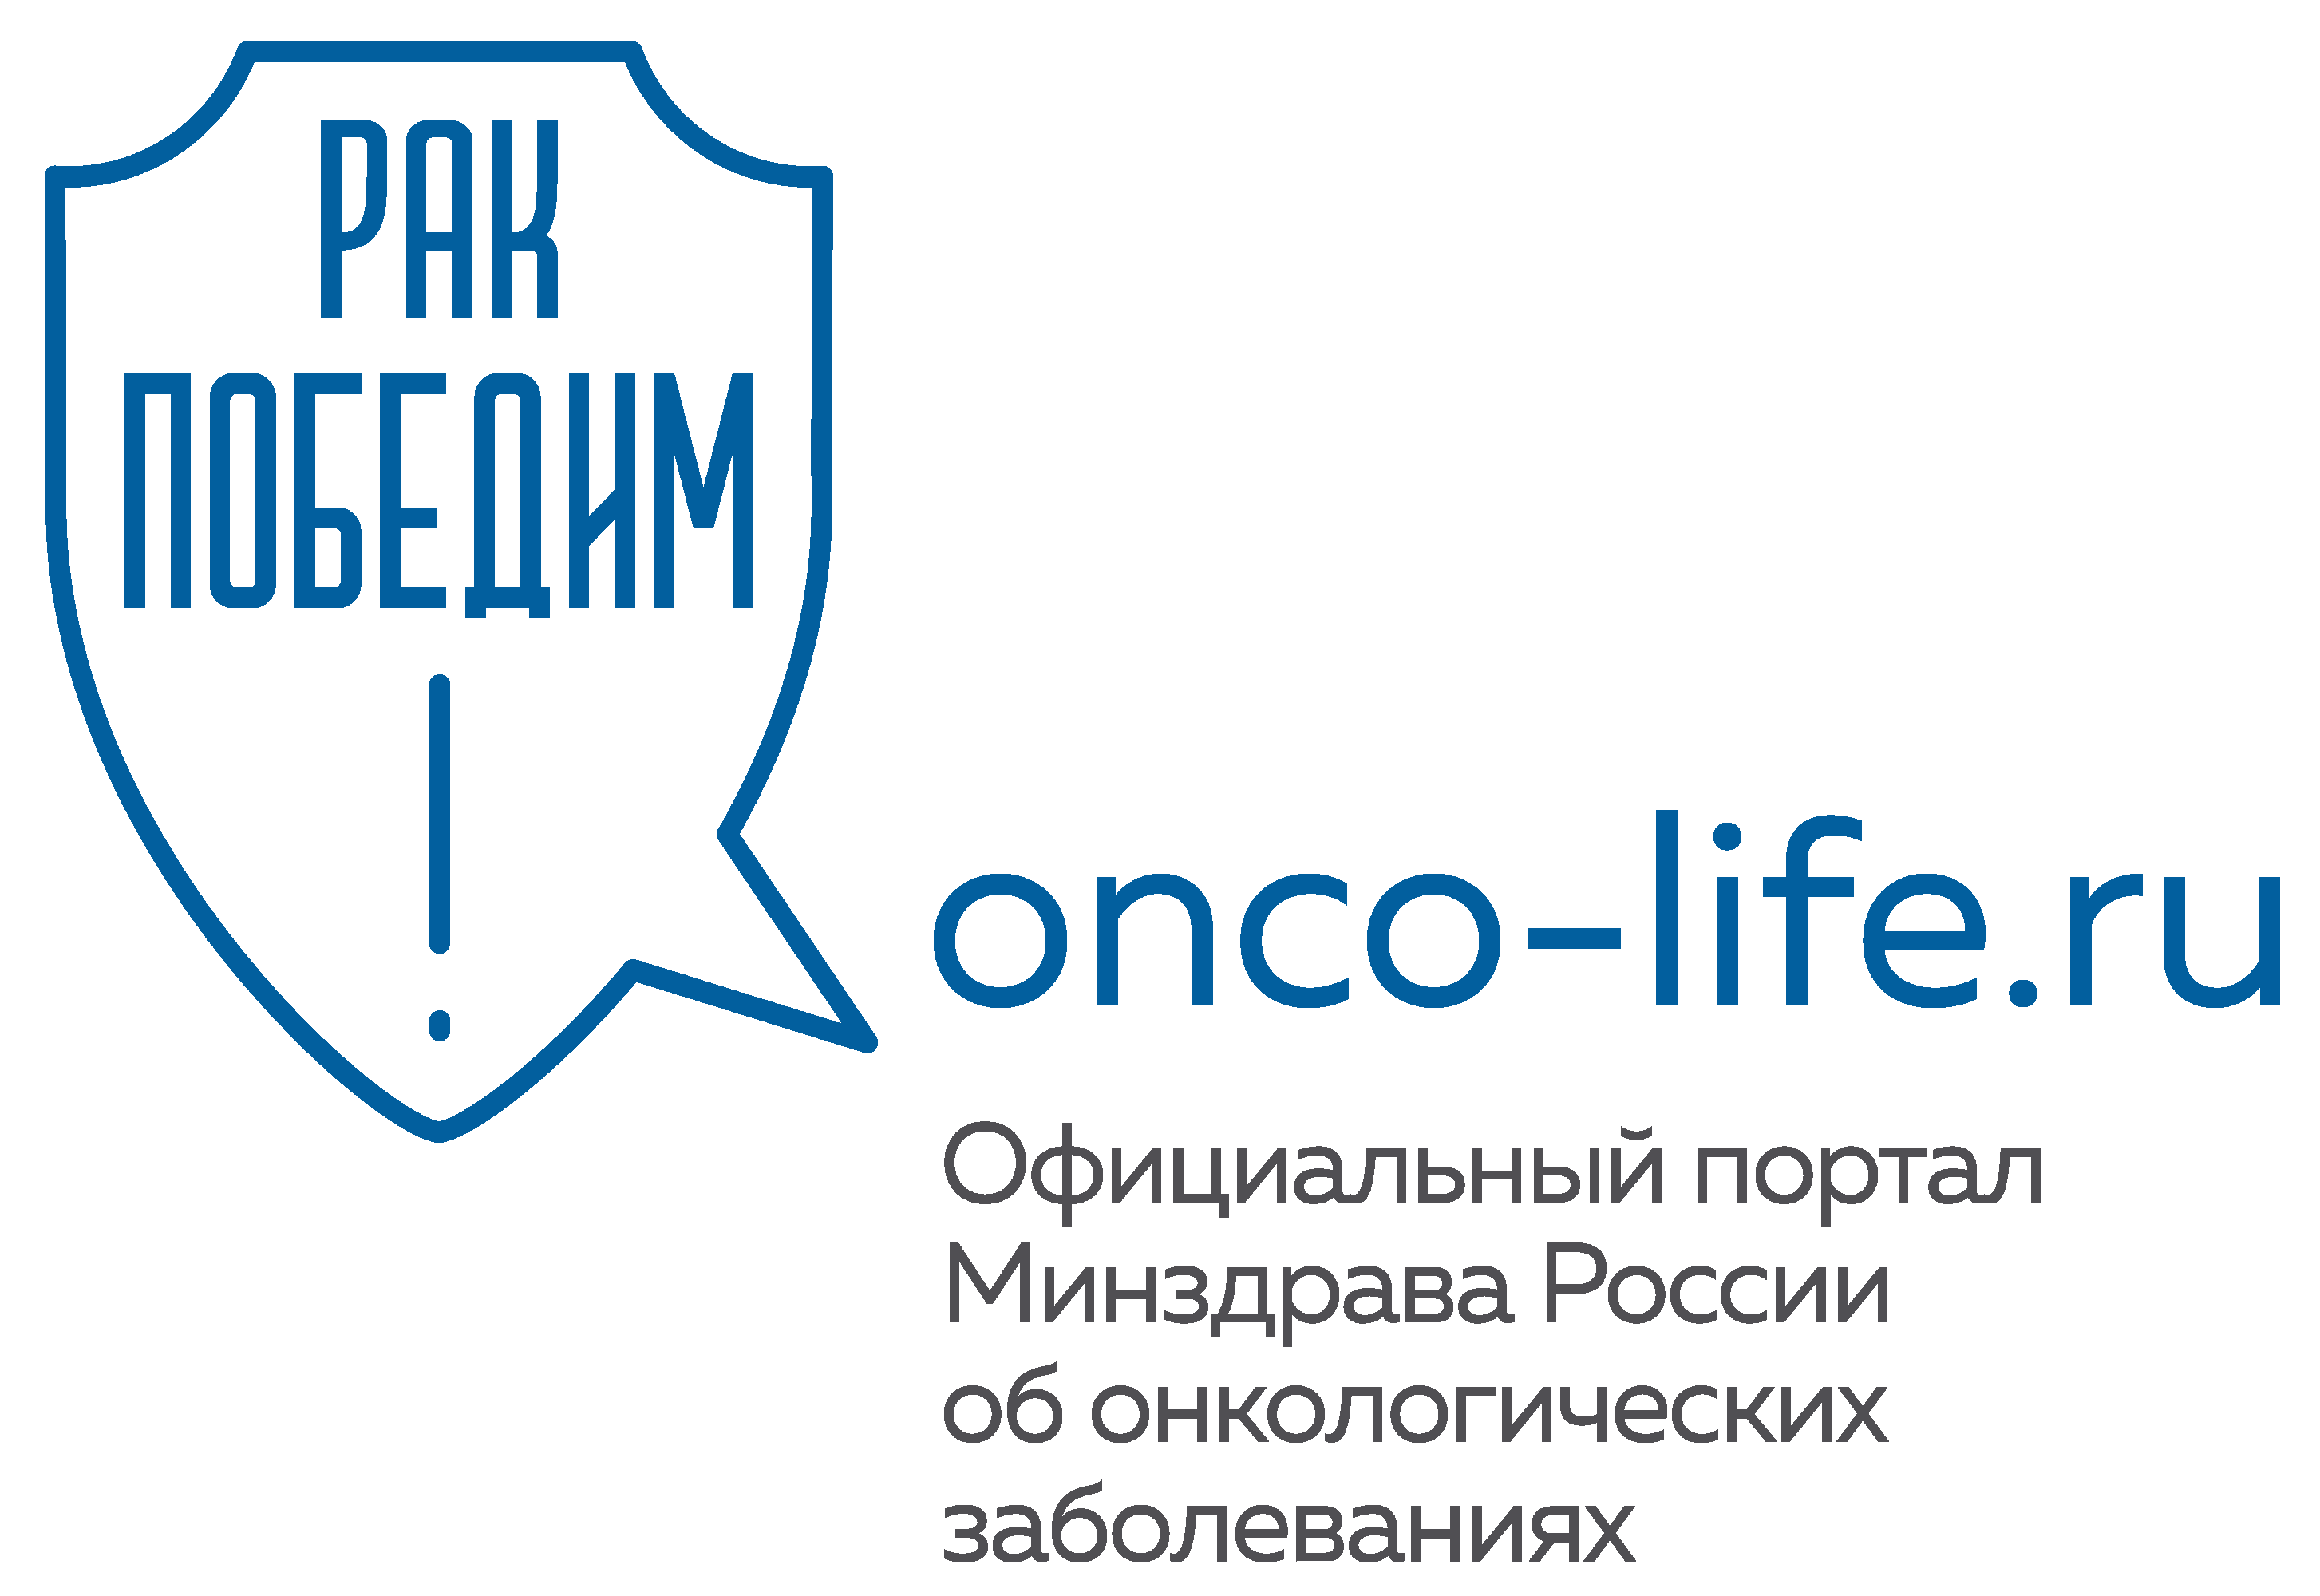 портал Министерства здравоохранения Российской Федерации об онкологических заболеваниях, их факторах риска, профилактике, диагностике и лечении.